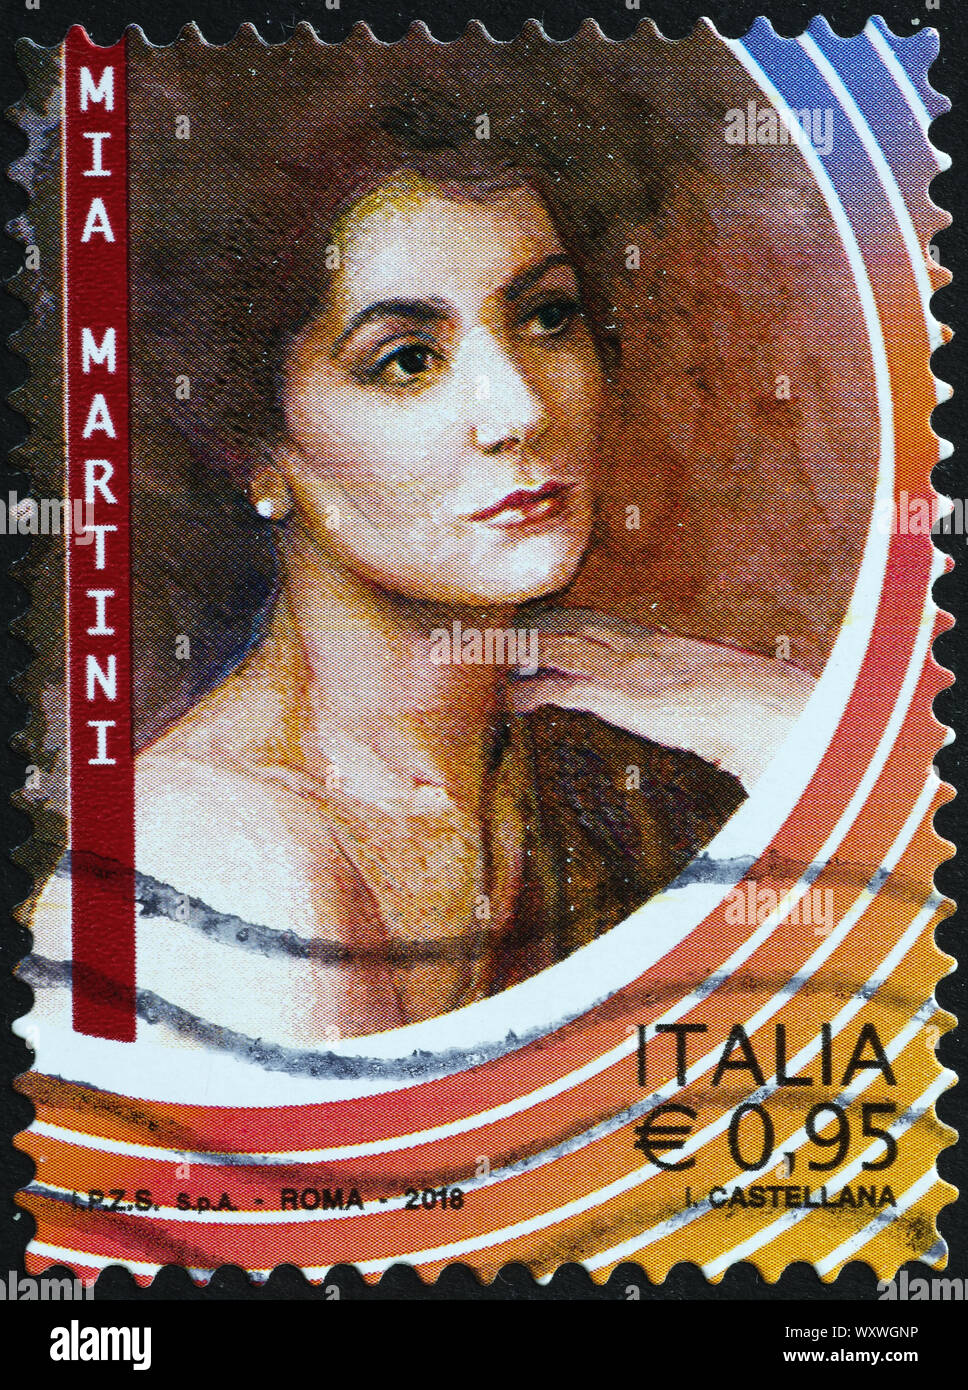 Cantante italiana Mia Martini sul francobollo Foto Stock